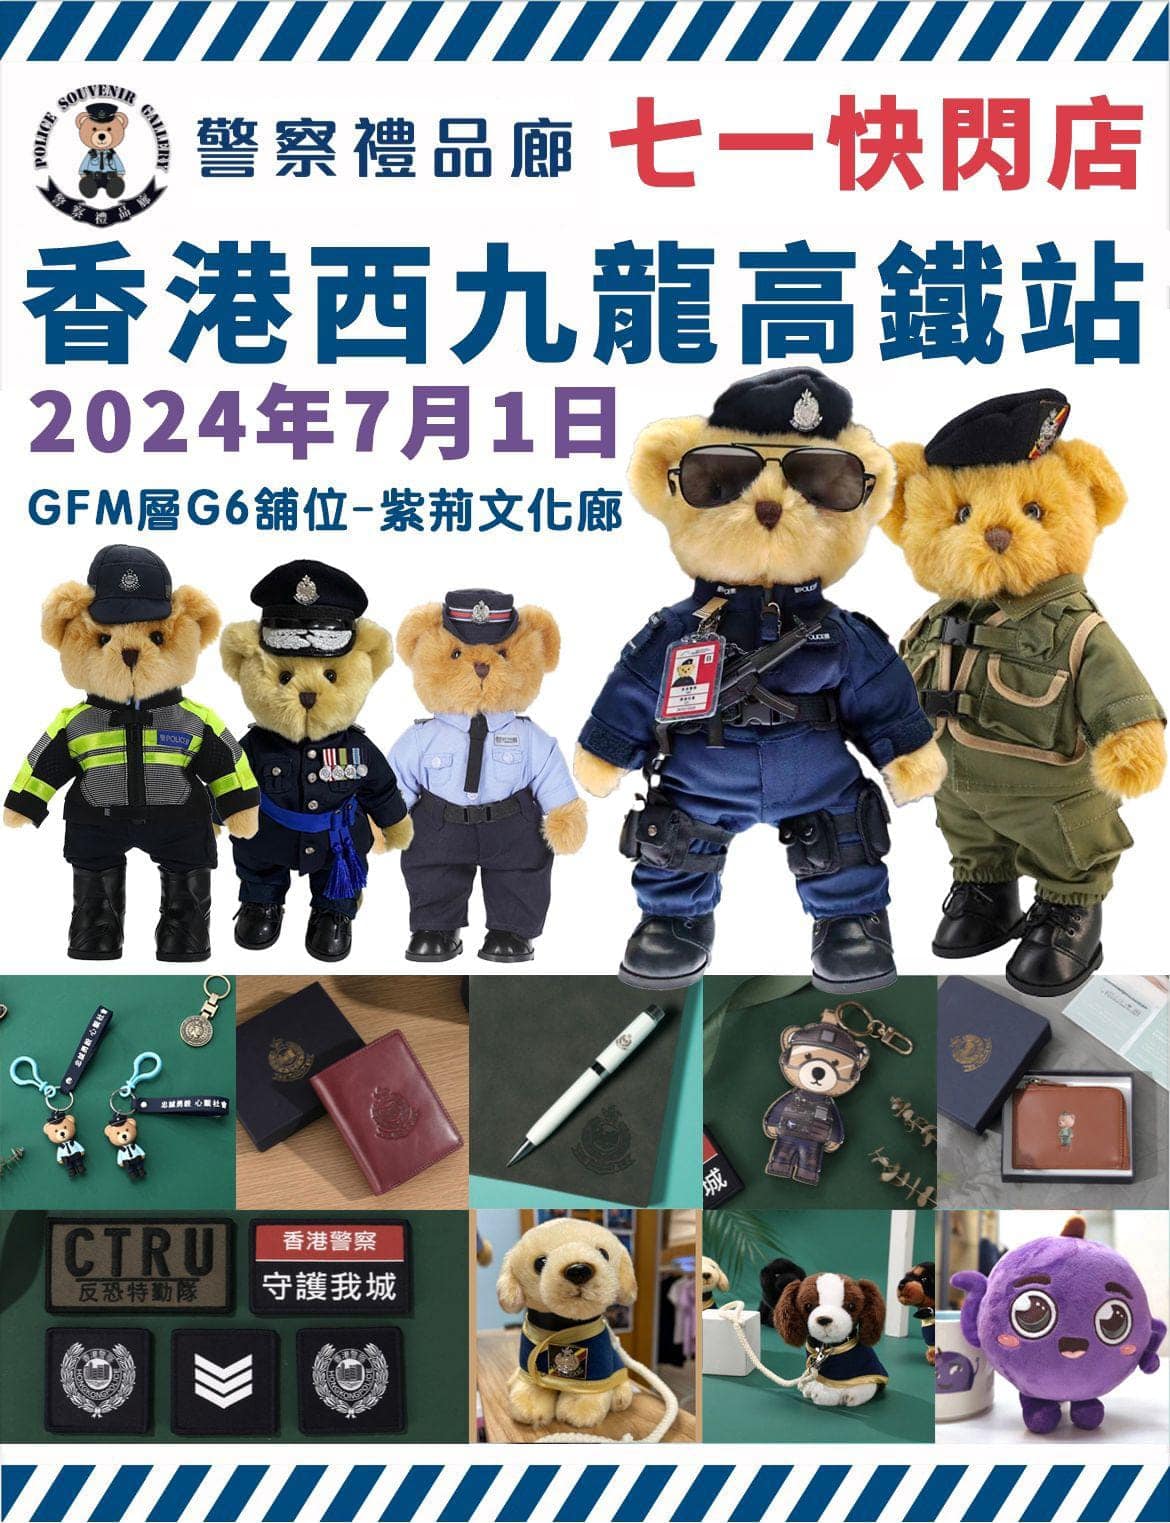 警察小熊 「快閃」西九龍 • 警察禮品廊「快閃店」七一高鐵站試業 